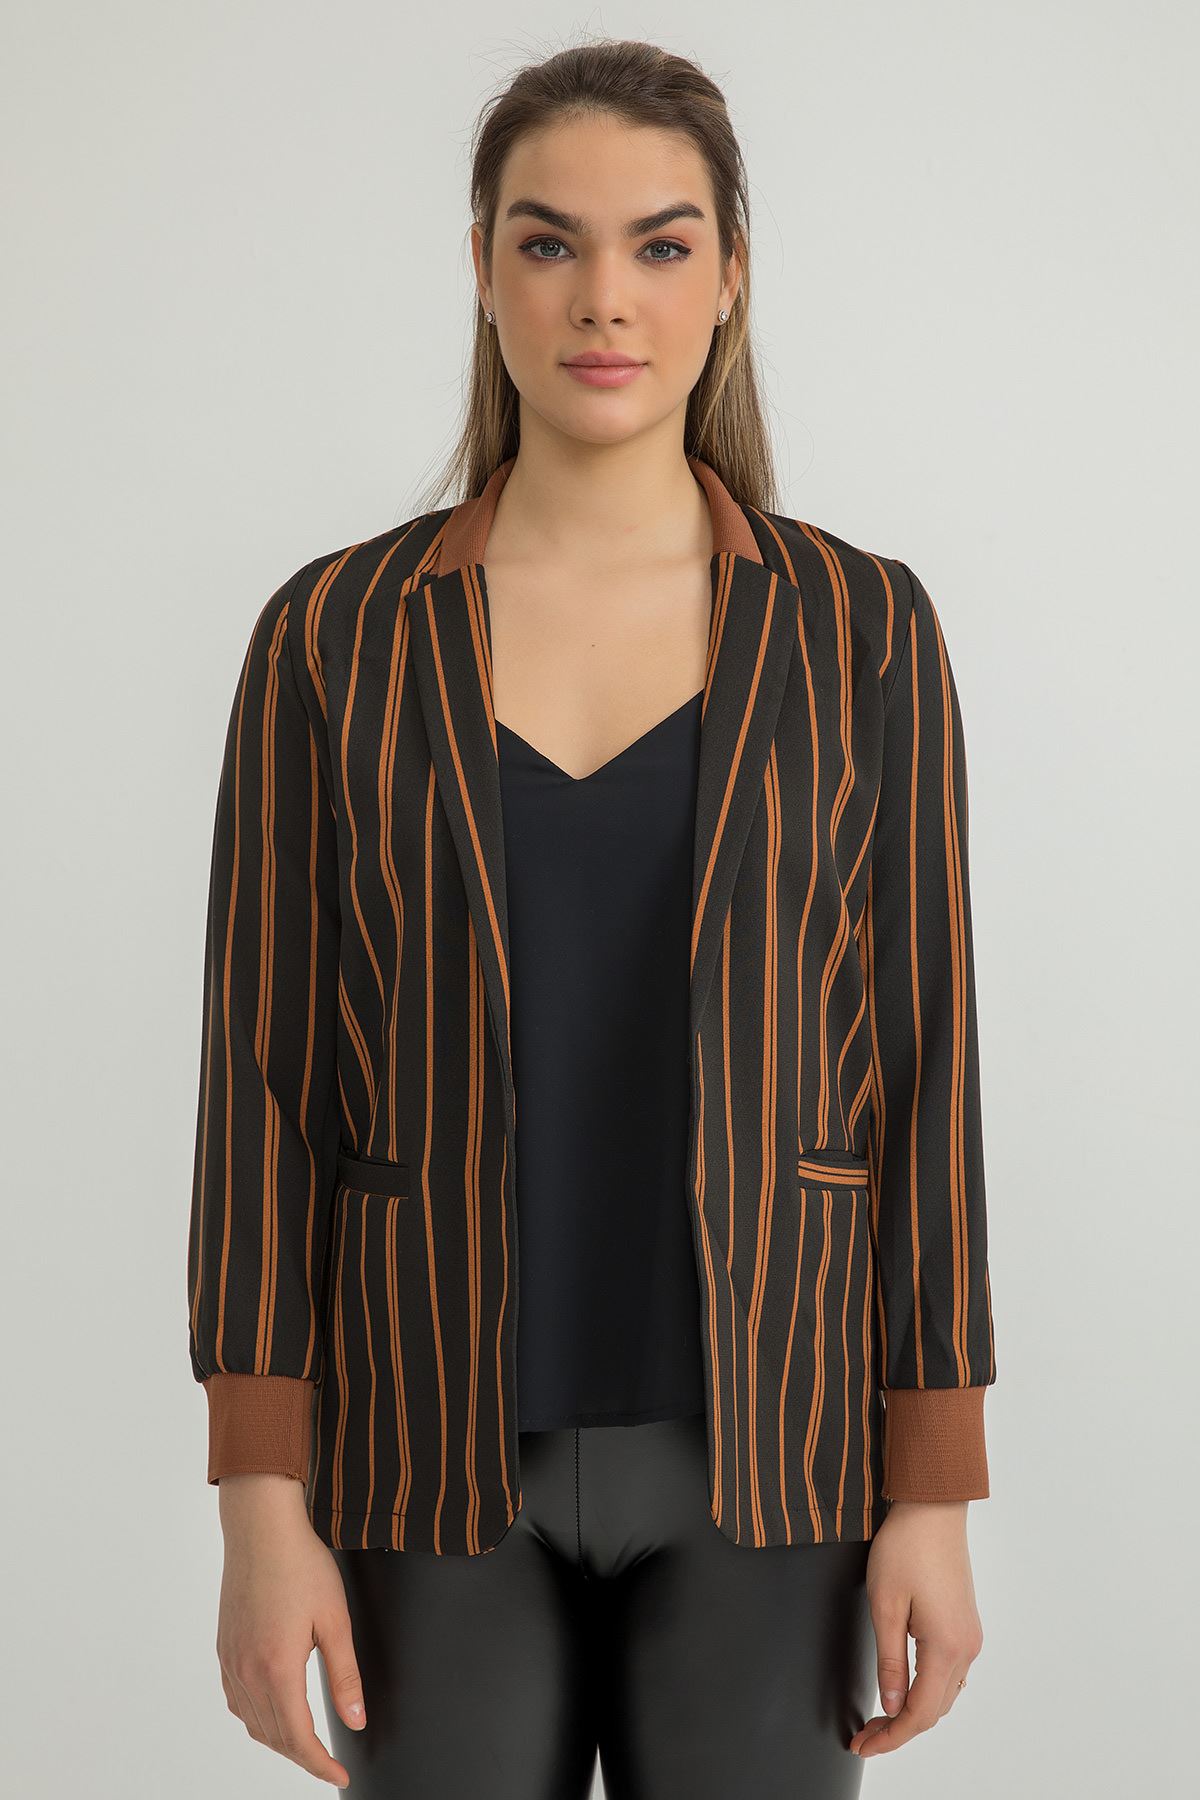 Классический женский пиджак длинный рукав в полоску атласный - Светло коричневый